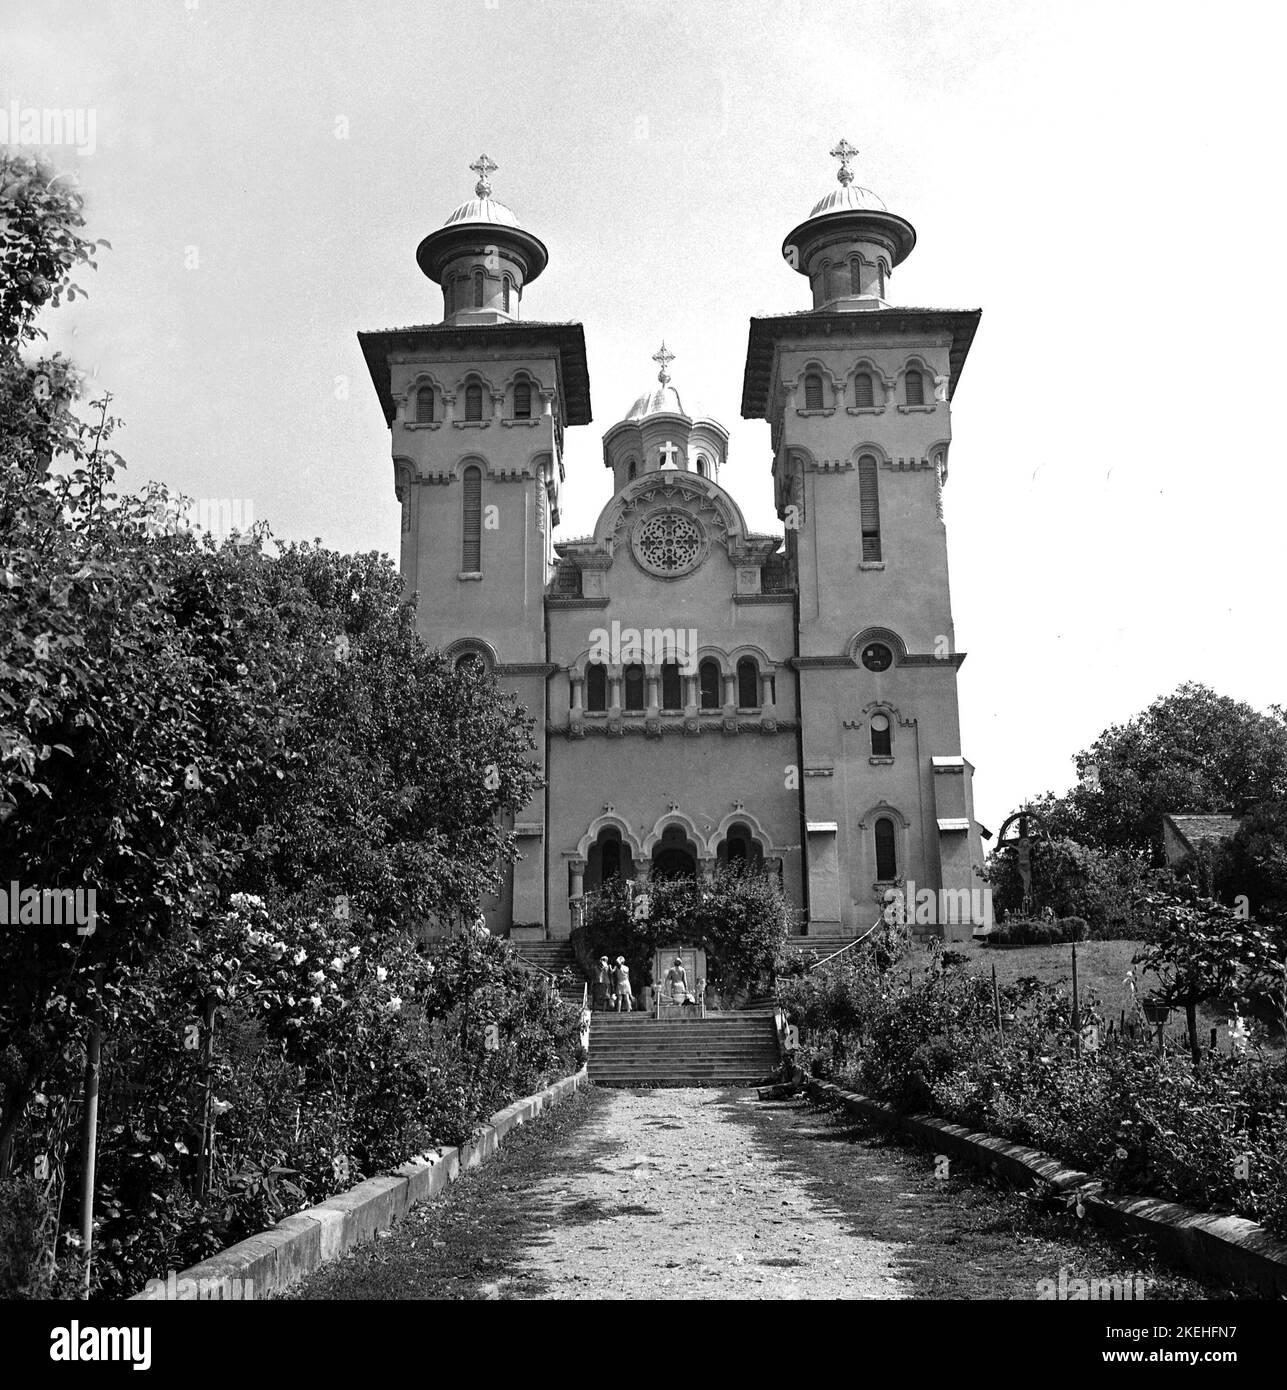 Zalău, Comté de Salaj, Roumanie, env. 1978. La cathédrale de l'Assomption (Dormition de l'église Théotokos). Banque D'Images